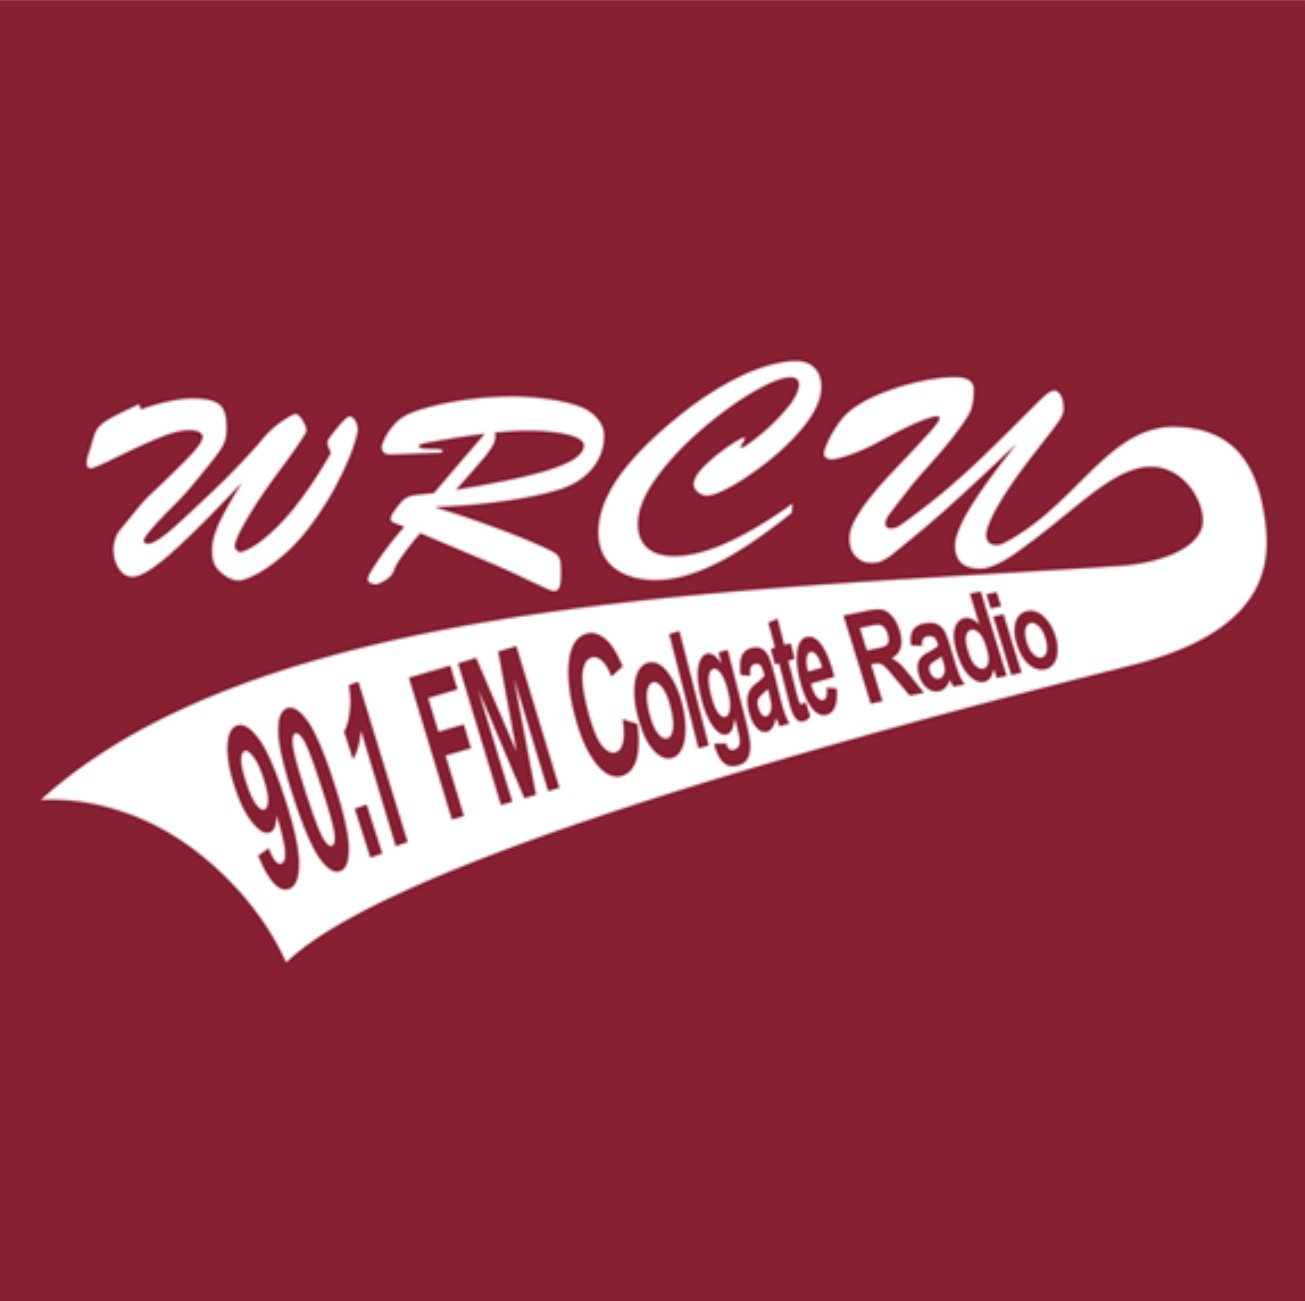 Rotations — WRCU FM 90.1